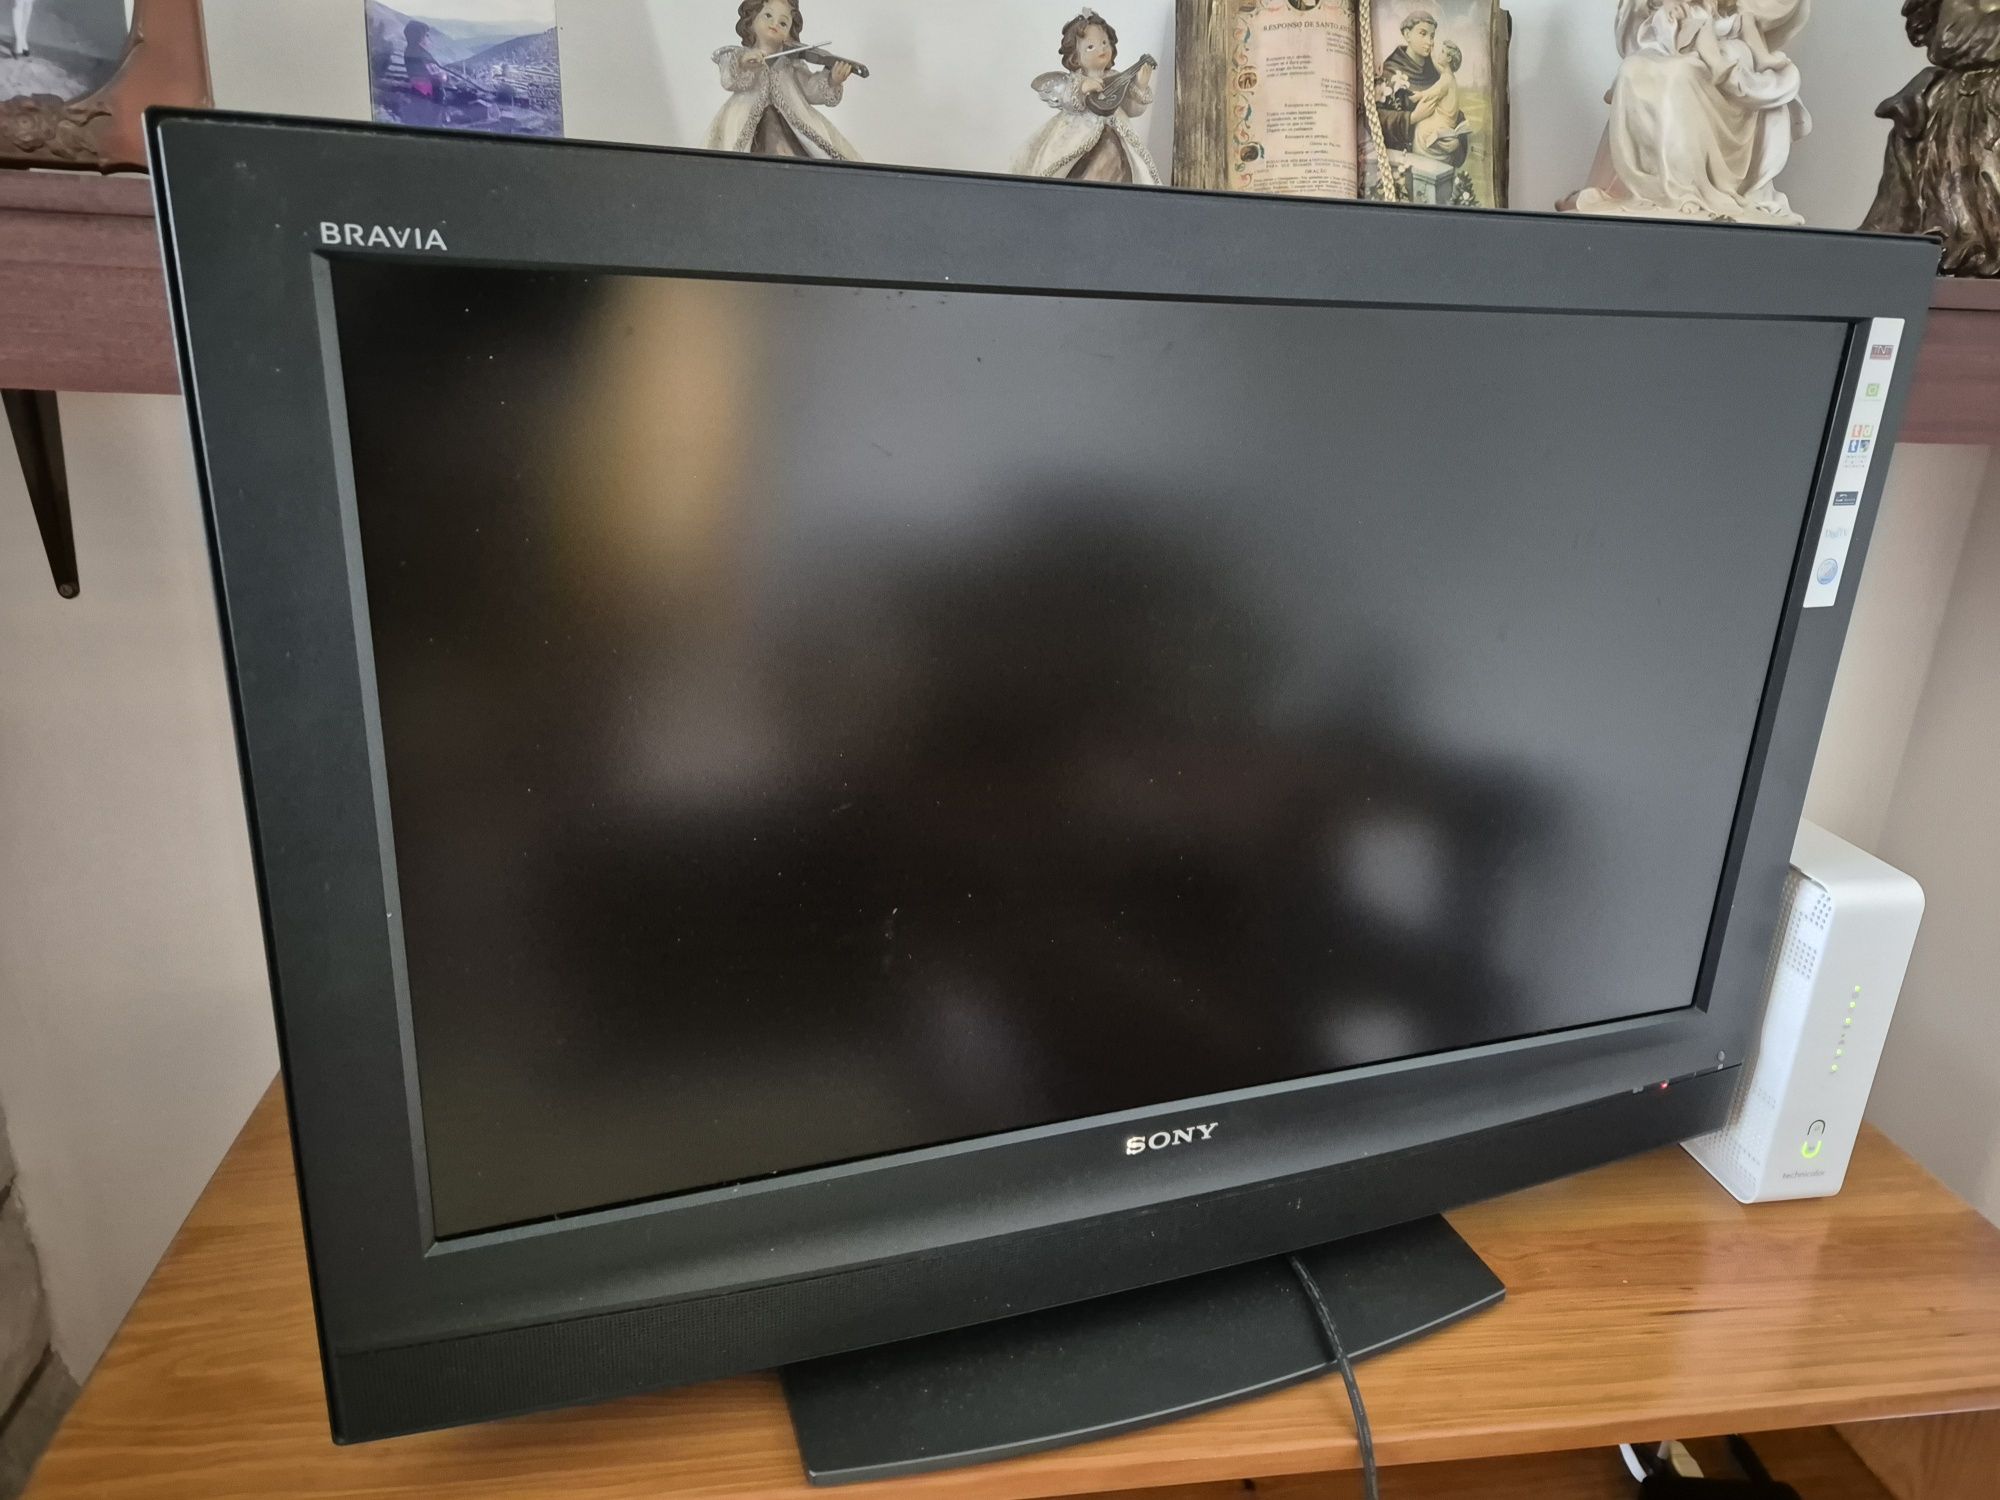 TV Sony Bravia model No KDL -32P2530